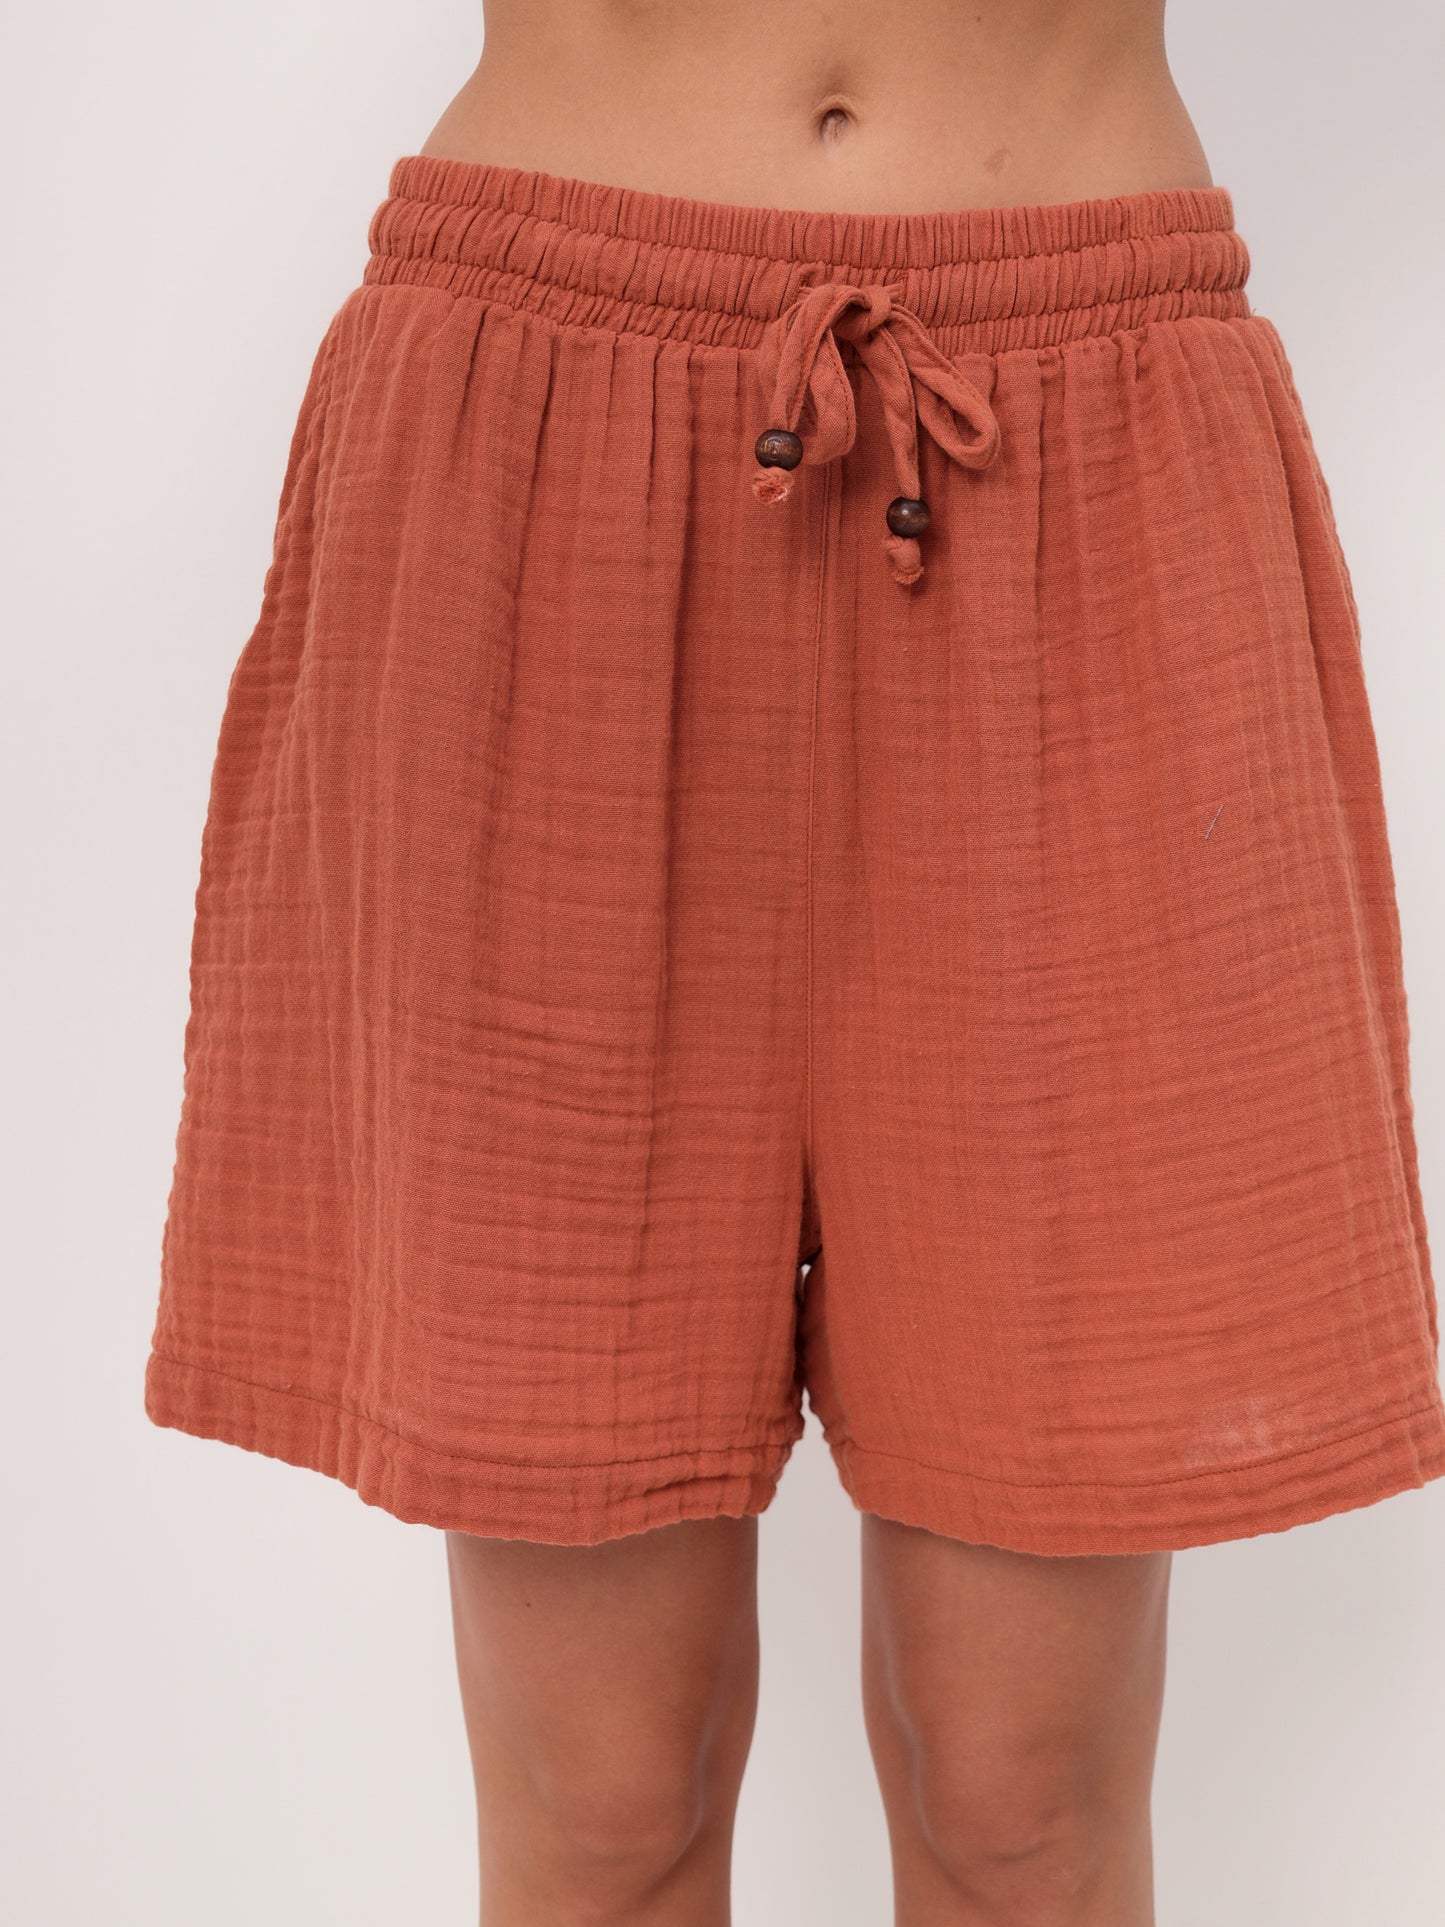 2teilige Damen Sommer Mode T-Shirt und Short Hosen Set aus lässige Musselin mit Kordelzug Freizeit Shorts LMS-6216 Burnt Brick